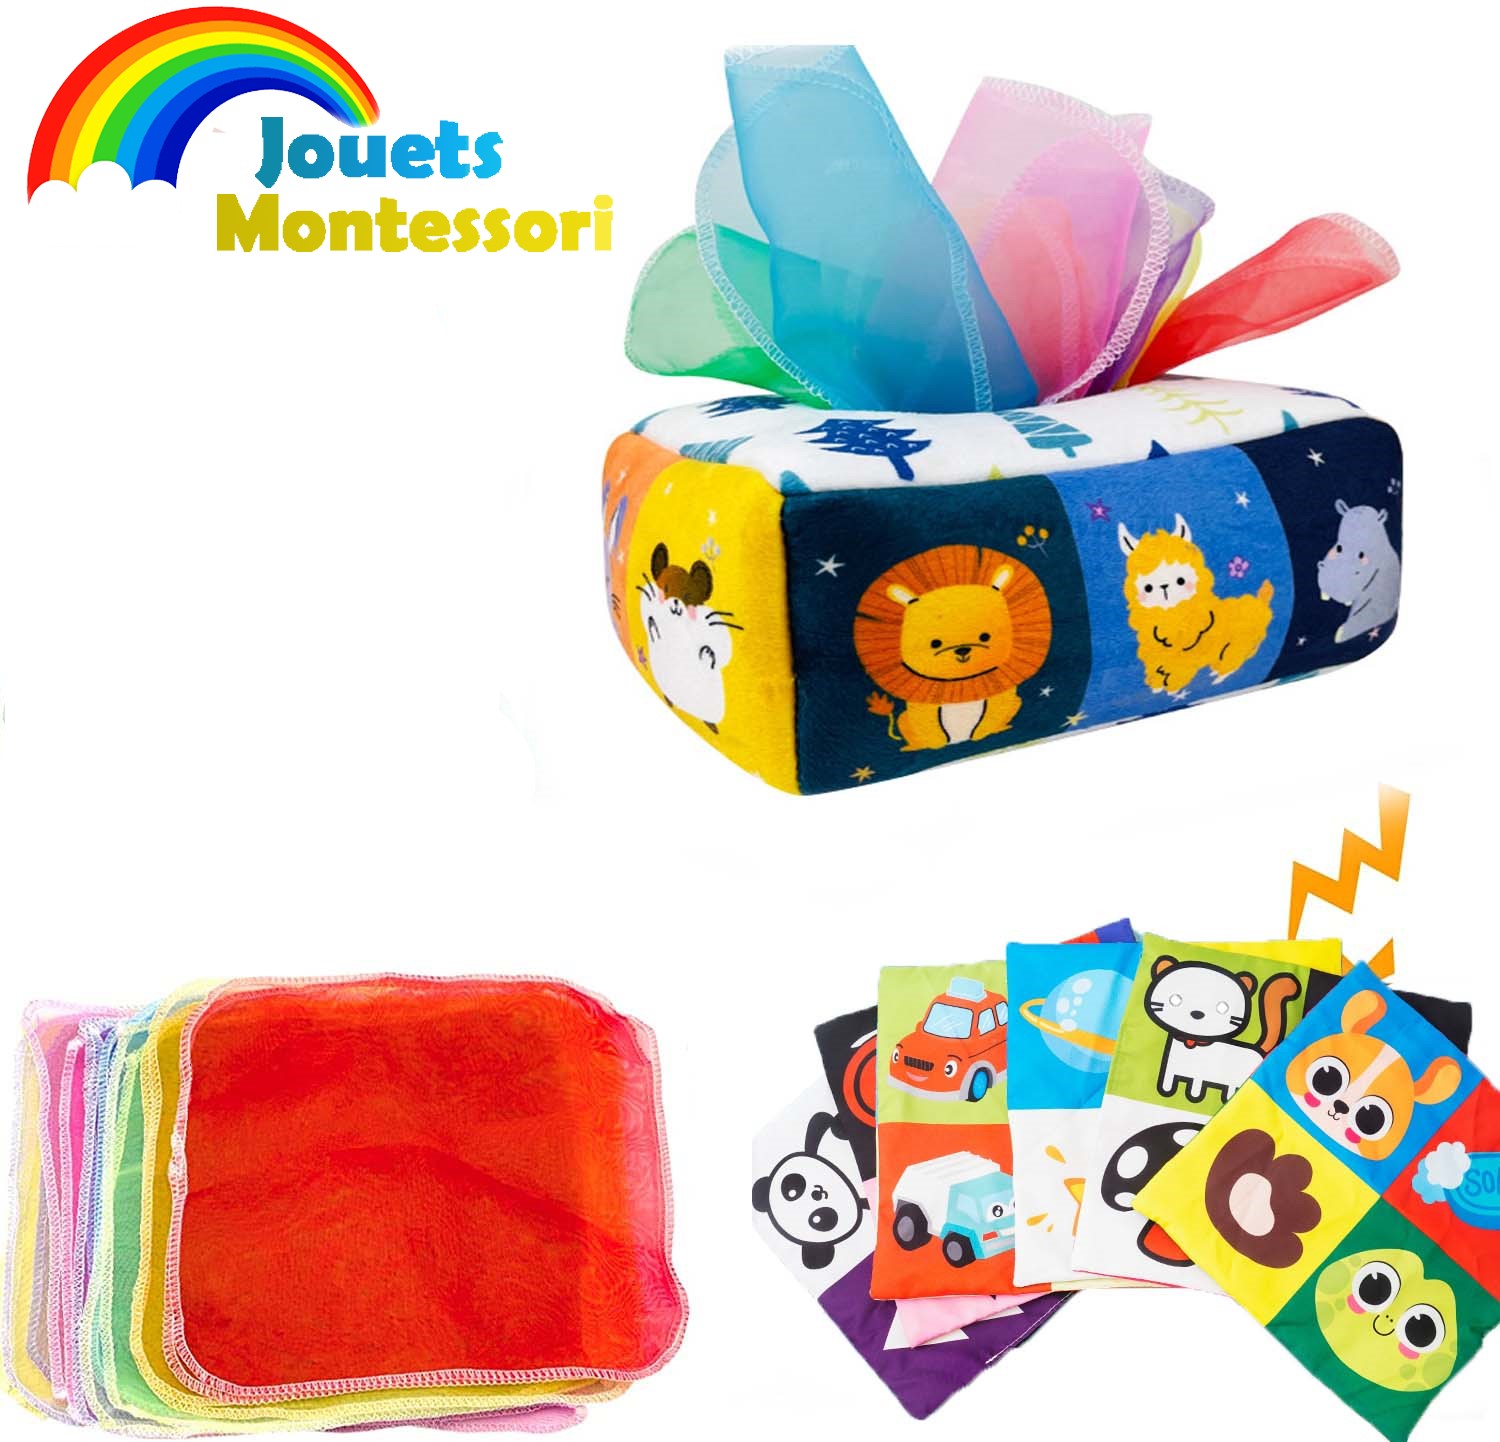 Boîte à mouchoirs Twefex pour bébé – Jouets pour bébé de 6 à 12 mois, boîte  à mouchoirs magique, jouets sensoriels pour bébés et tout-petits, jouets